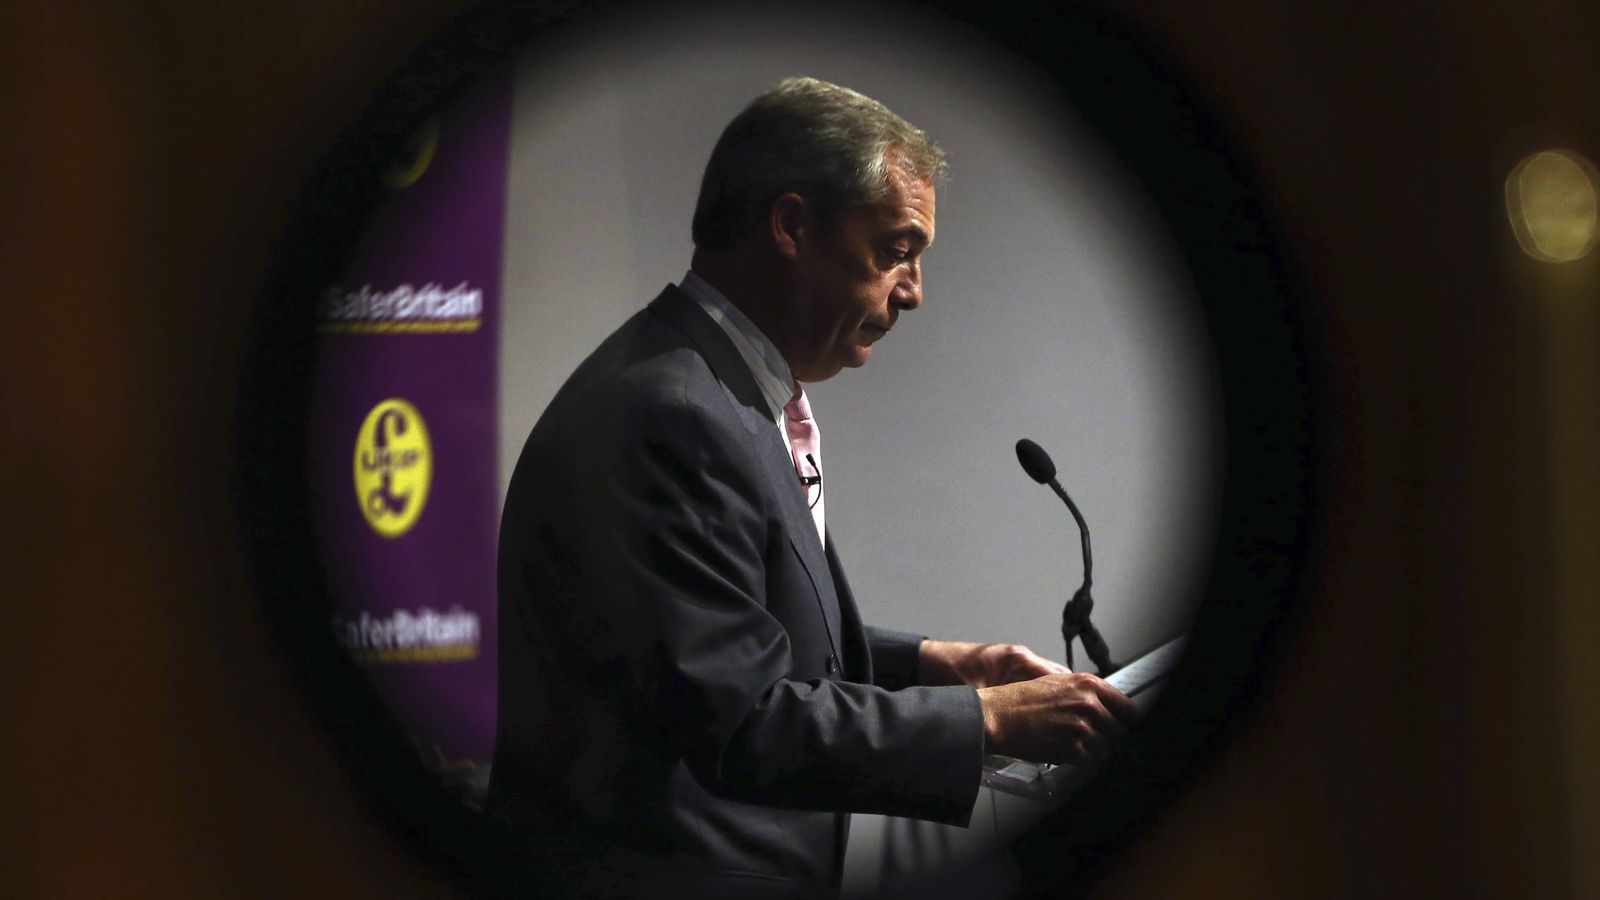 Foto: El líder del UKIP Nigel Farage habla durante un evento a favor del Brexit, en Londres, el 3 de junio de 2016 (Reuters). 